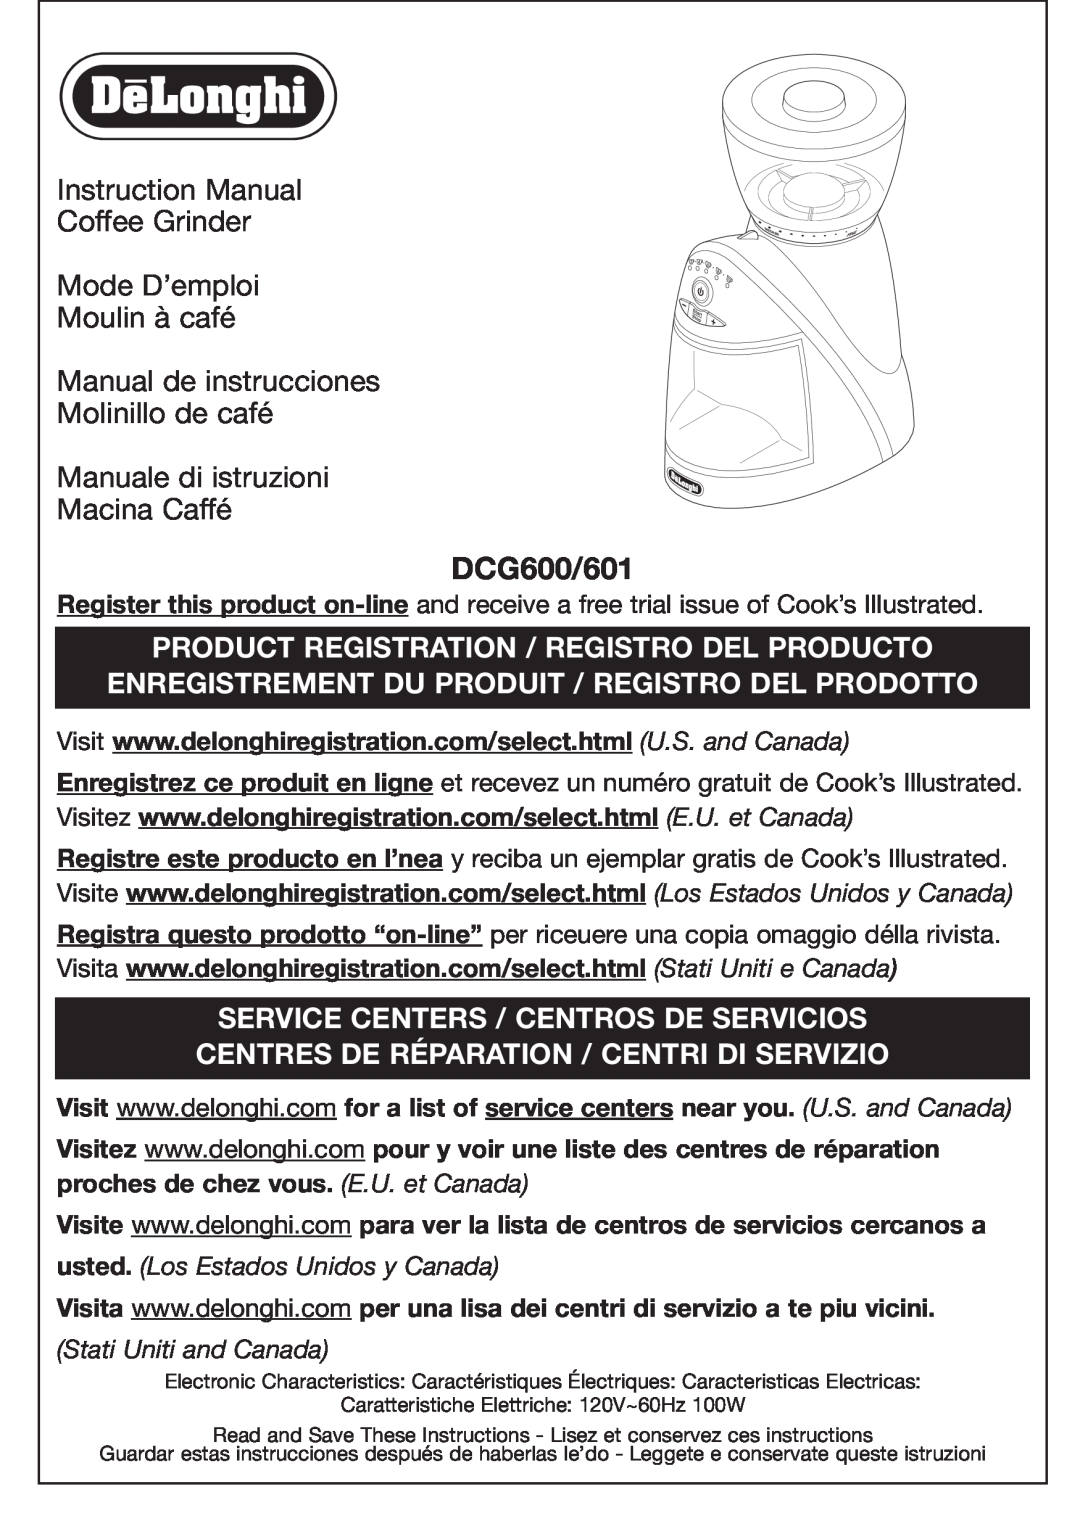 DeLonghi manual DCG600/601, Moulin à café Manual de instrucciones, Molinillo de café Manuale di istruzioni, Macina Caffé 